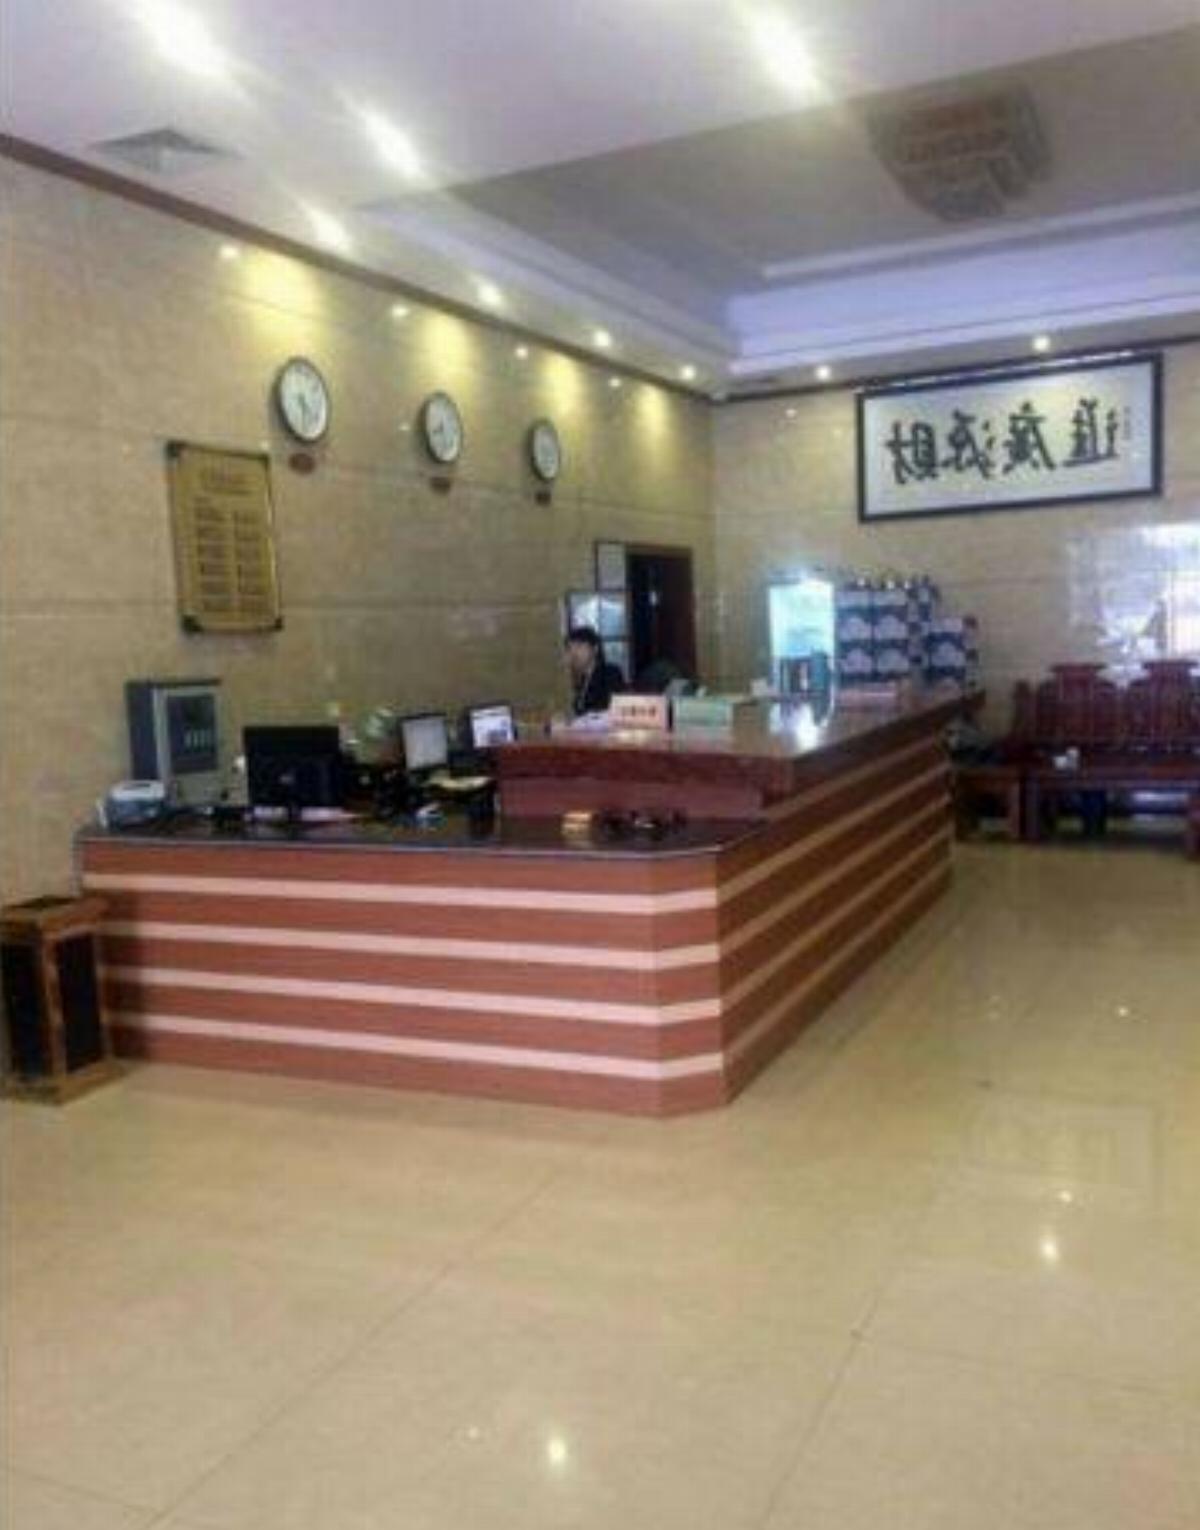 Lianjiang Yue Guang Business Hotel Hotel Lianjiang China